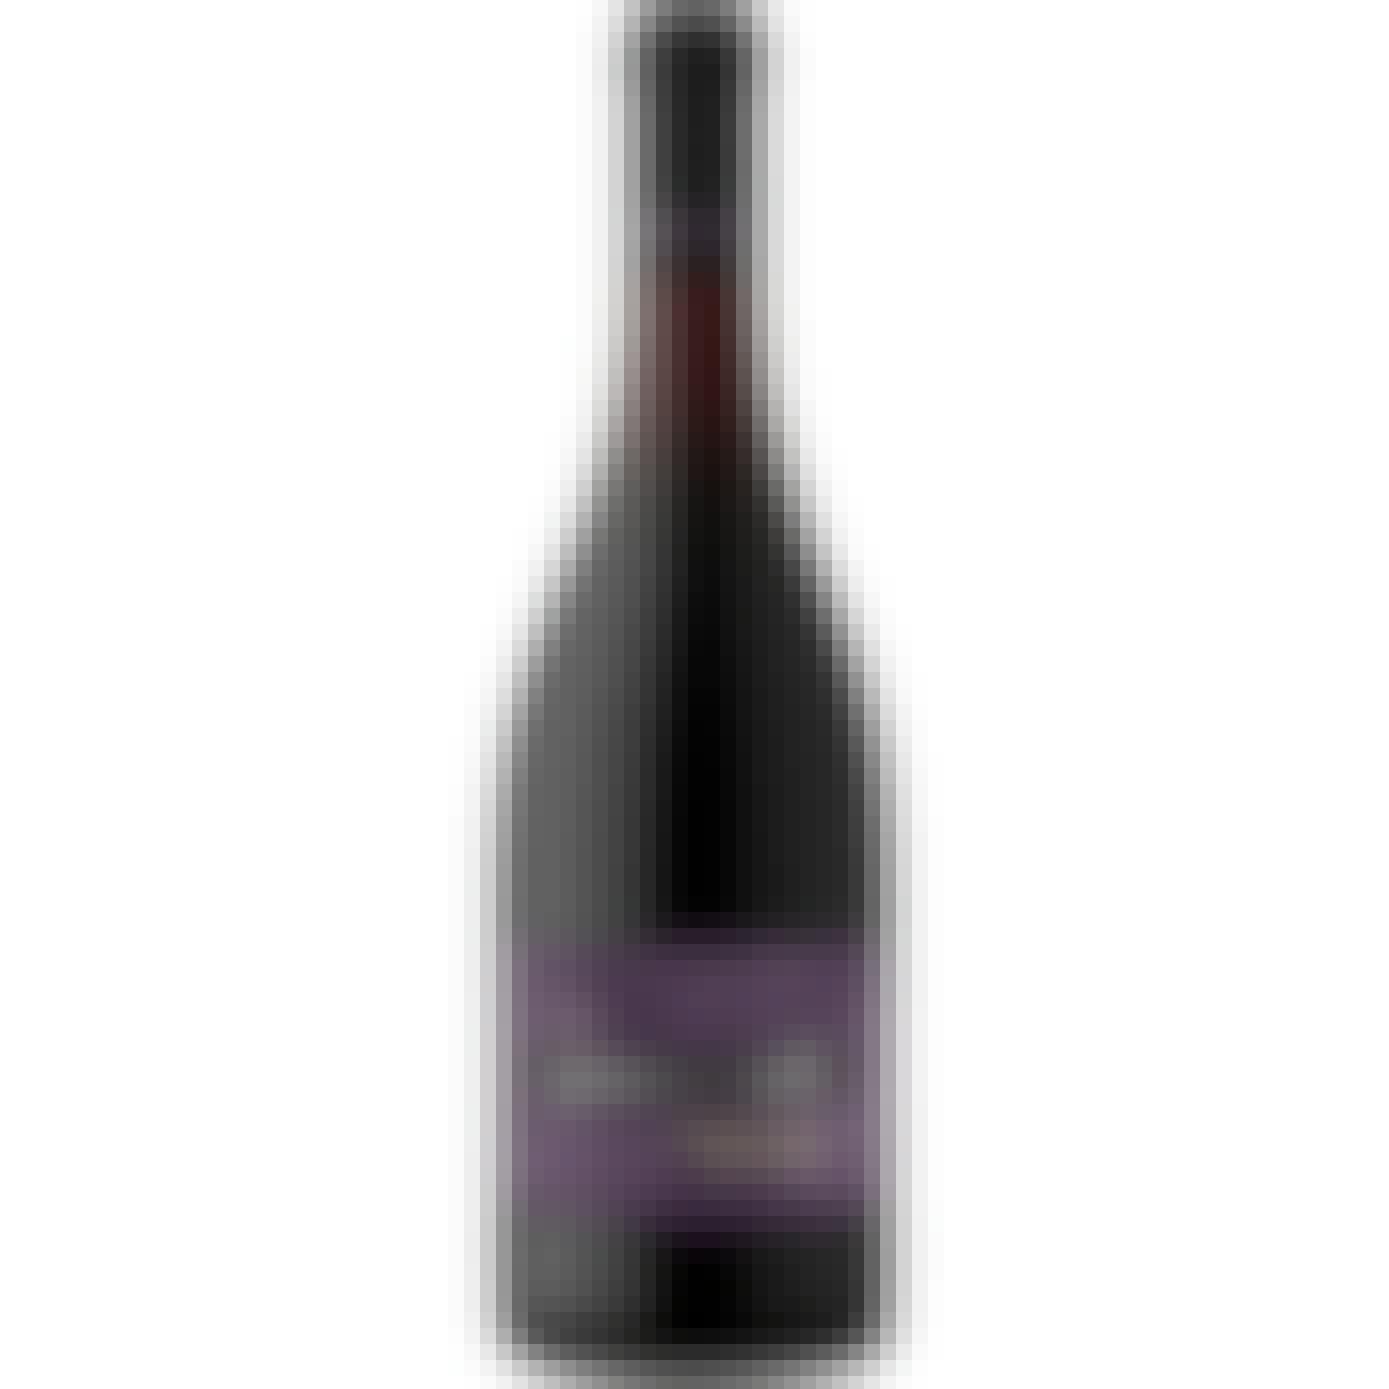 Penner-Ash Willamette Valley Pinot Noir 2021